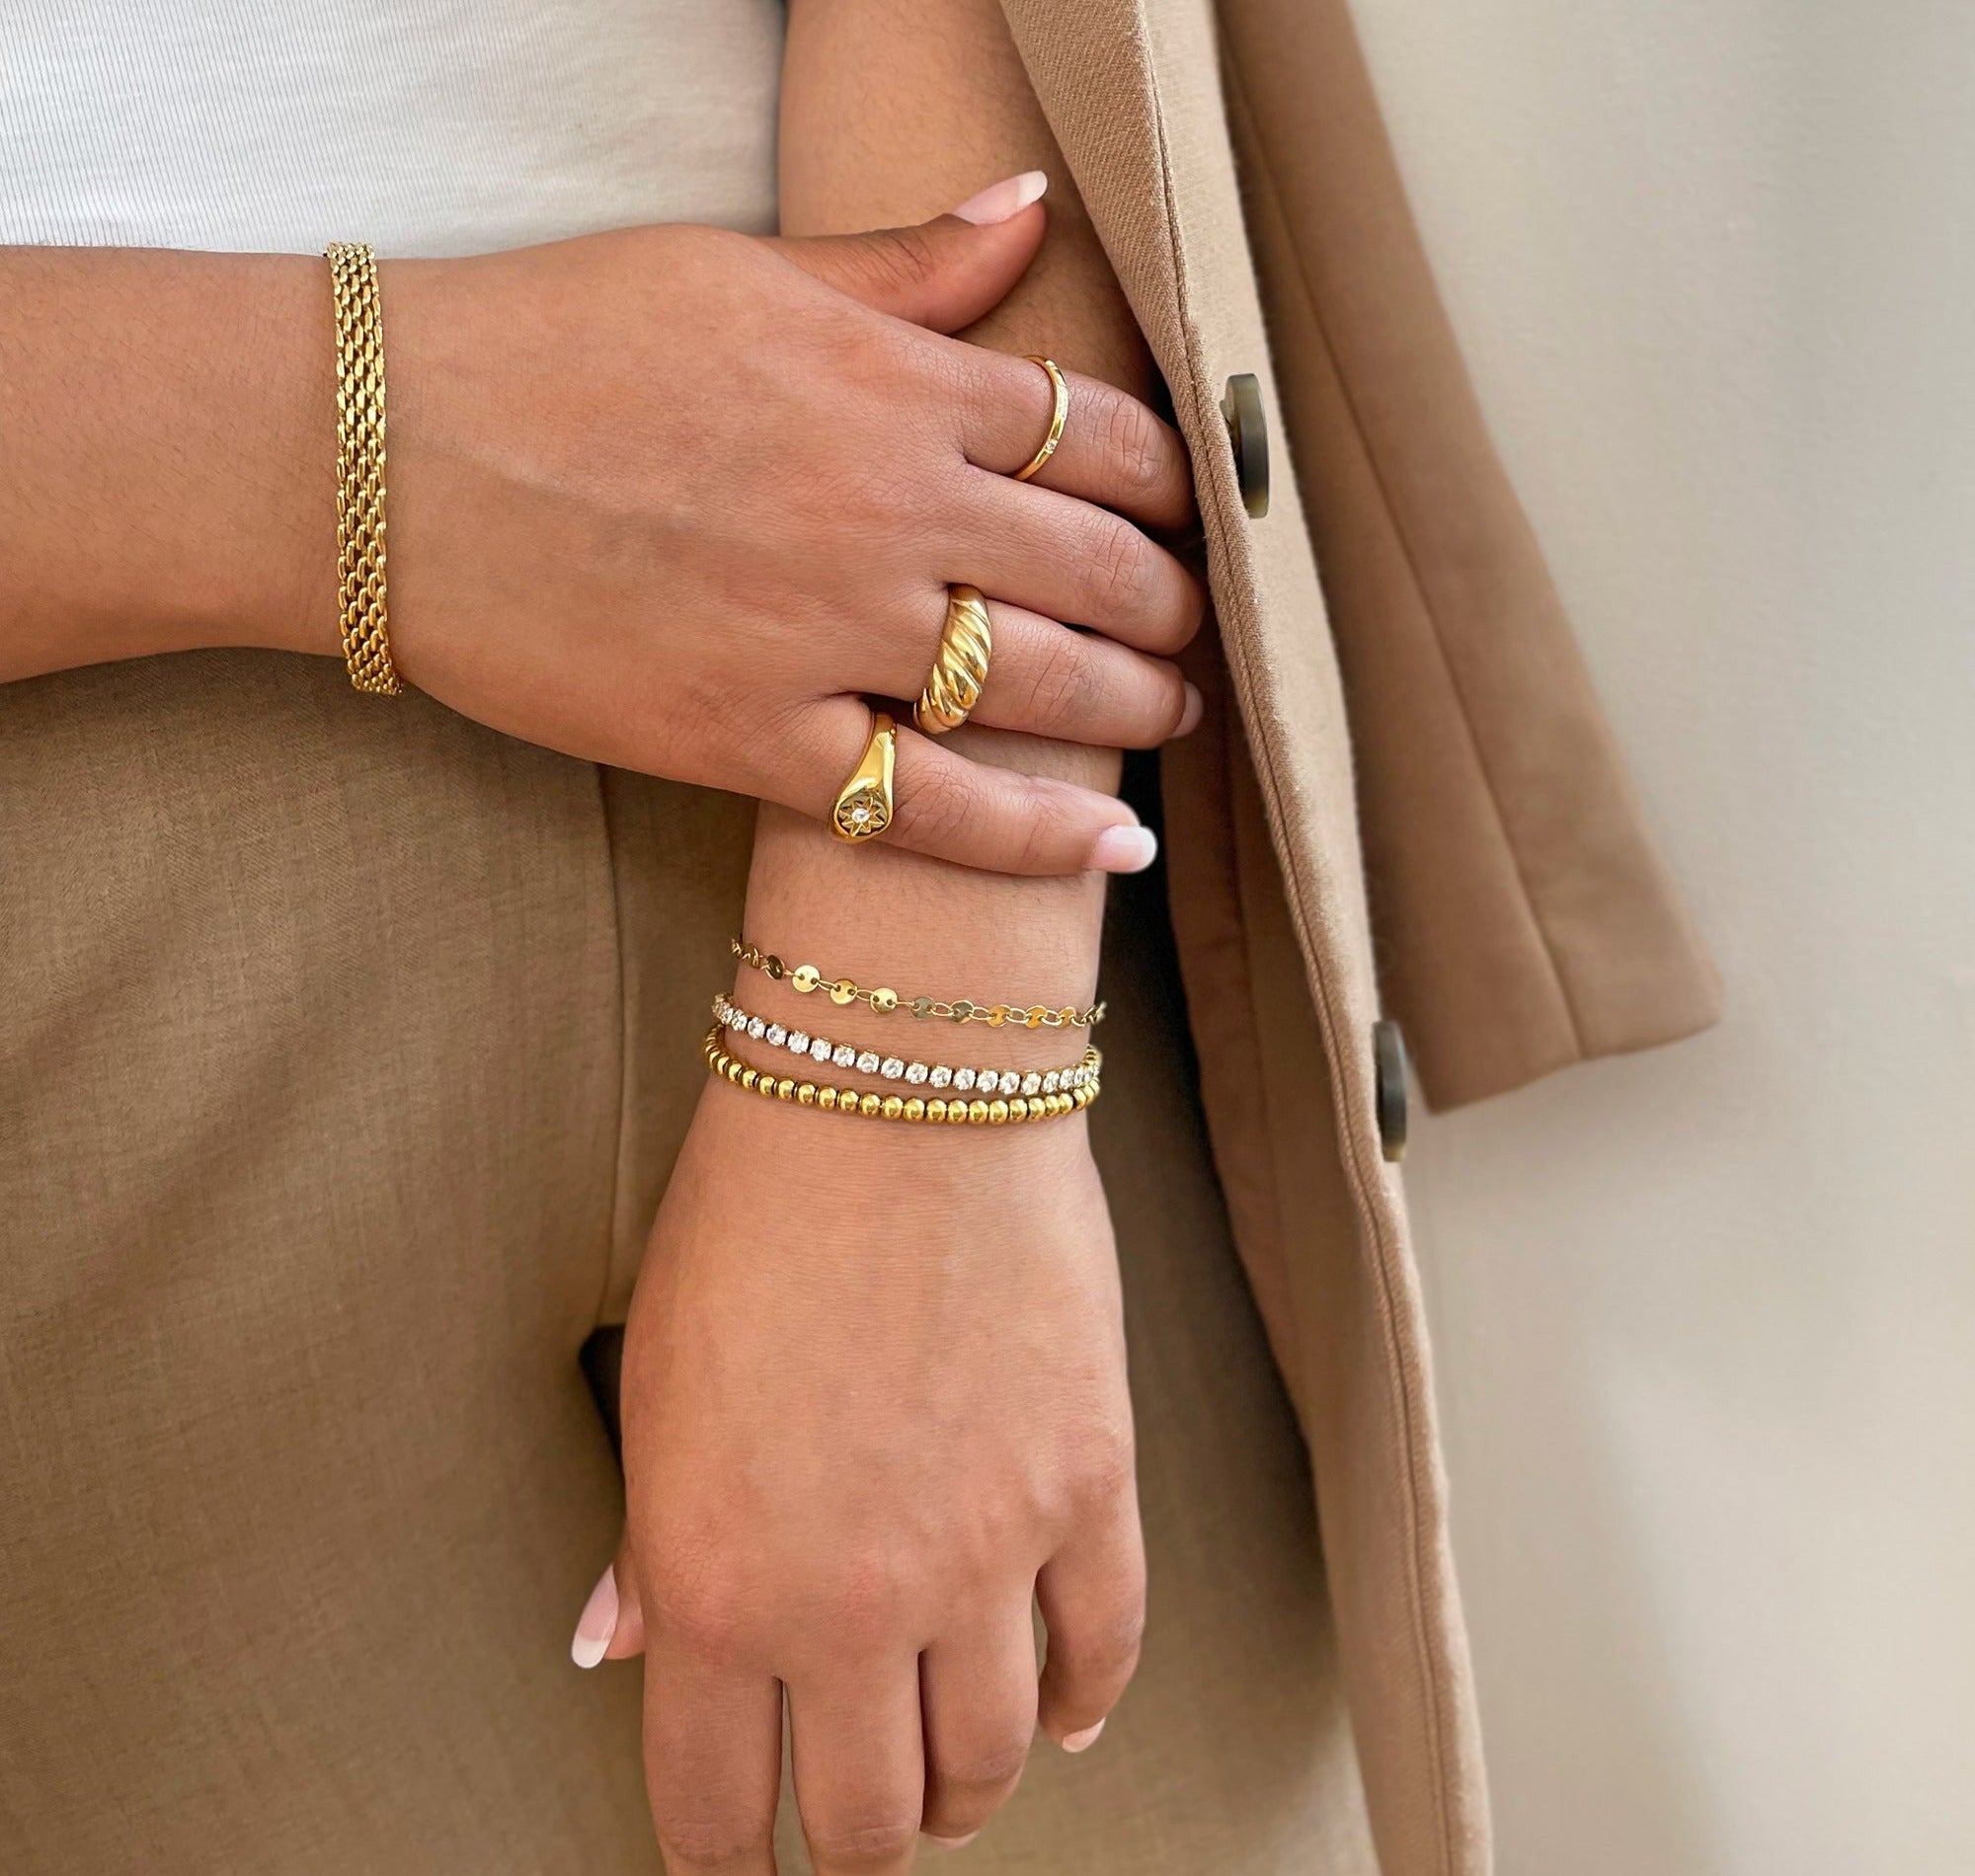 dainty gold waterproof bracelets